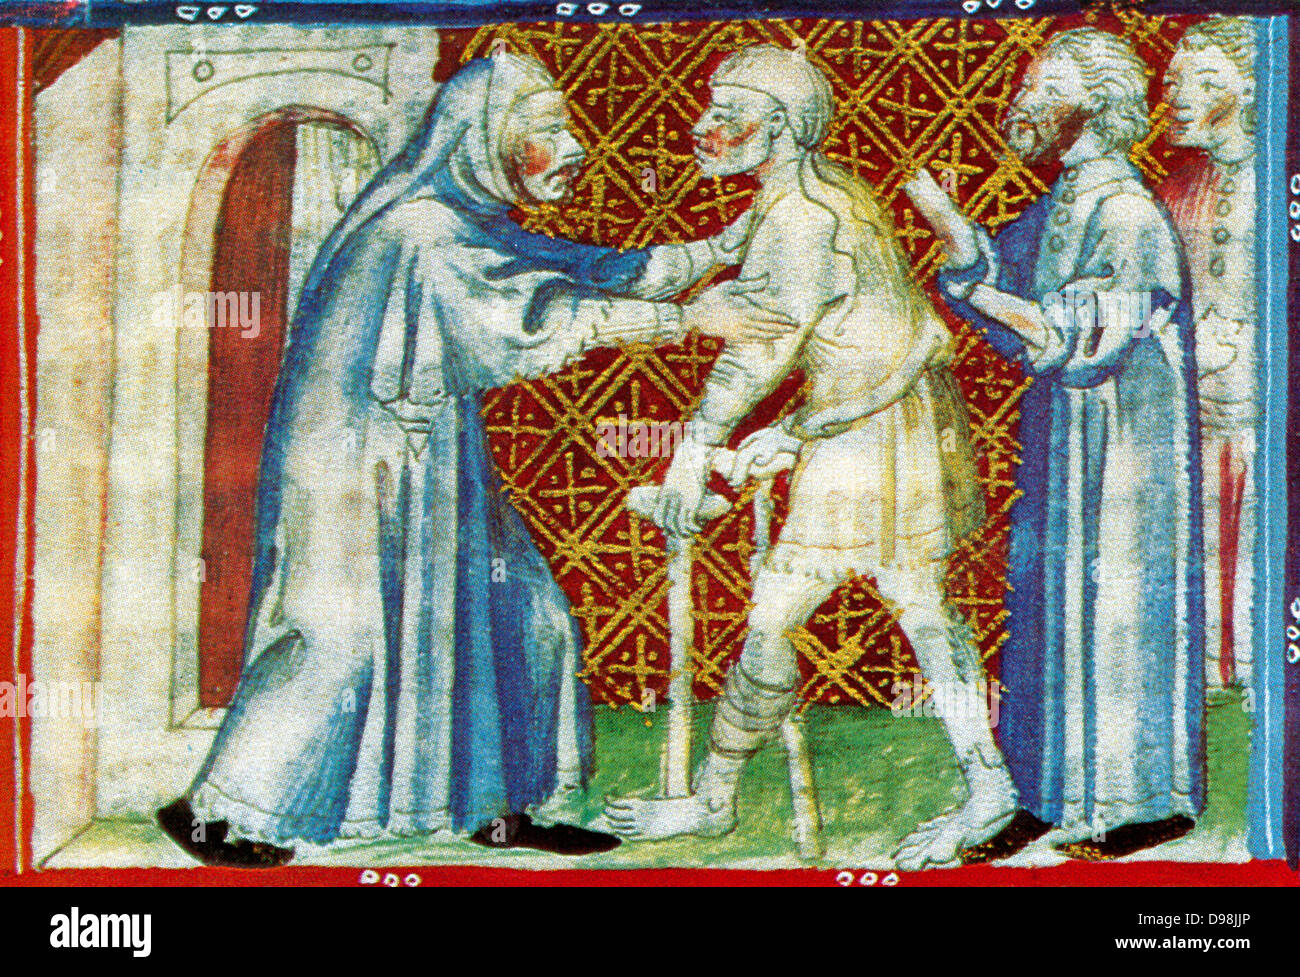 Escena desde el siglo XIV, manuscrito ilustrado del Breviari d'amor. Ilustra los siete actos de misericordia. Aquí está demostrado dar cobijo a los sin hogar Foto de stock